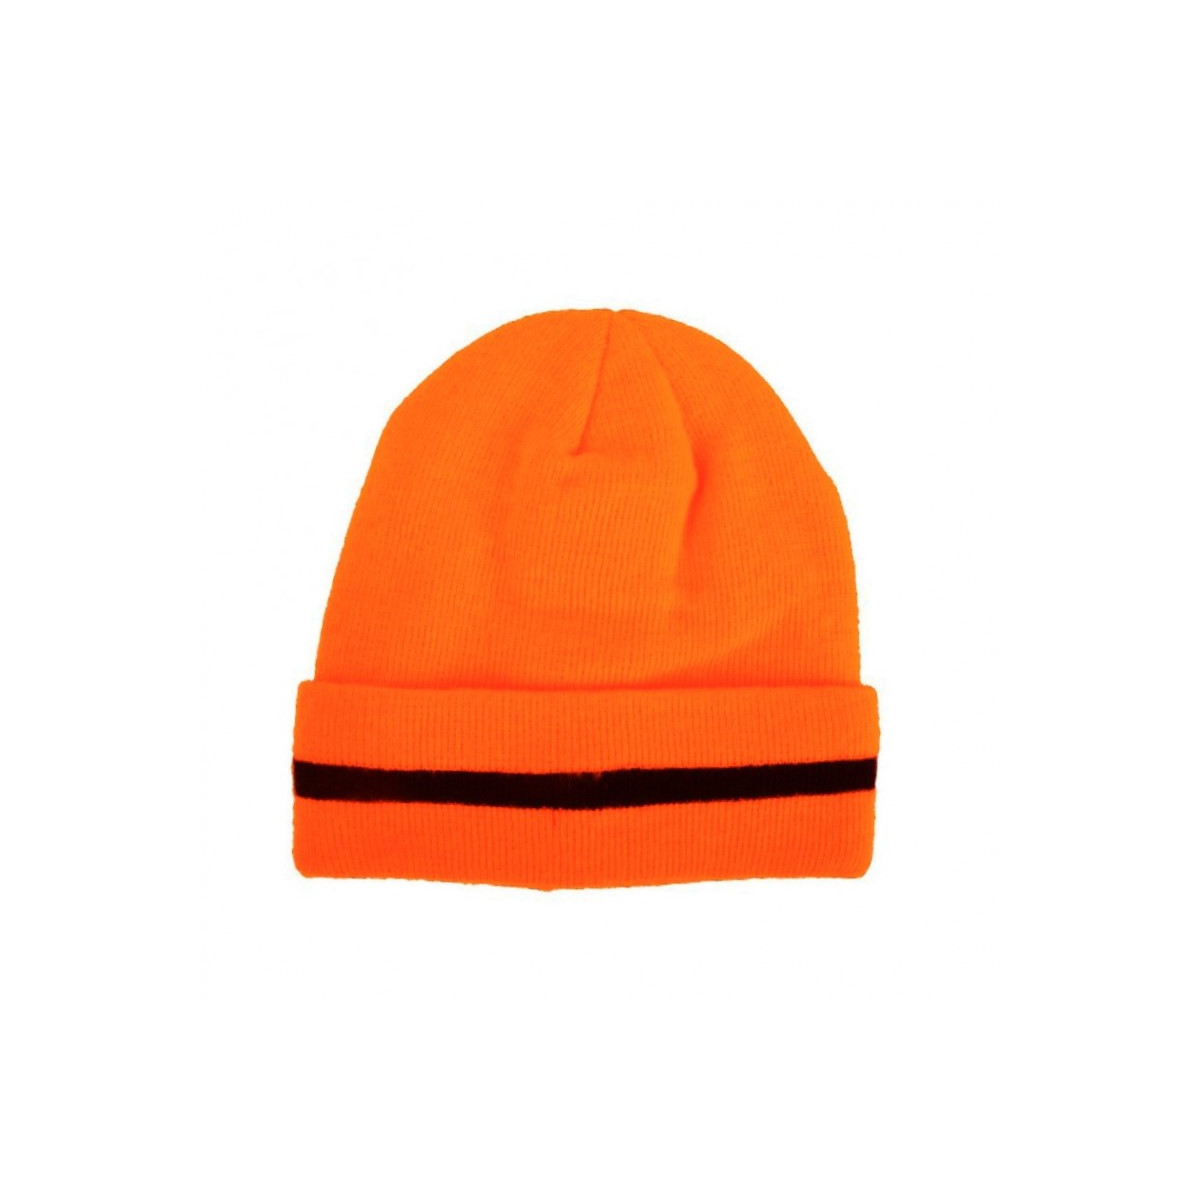 czapki-bhp-jesien-zima - Czapka odblaskowa z ociepliną orange L1938100 Lahti Pro